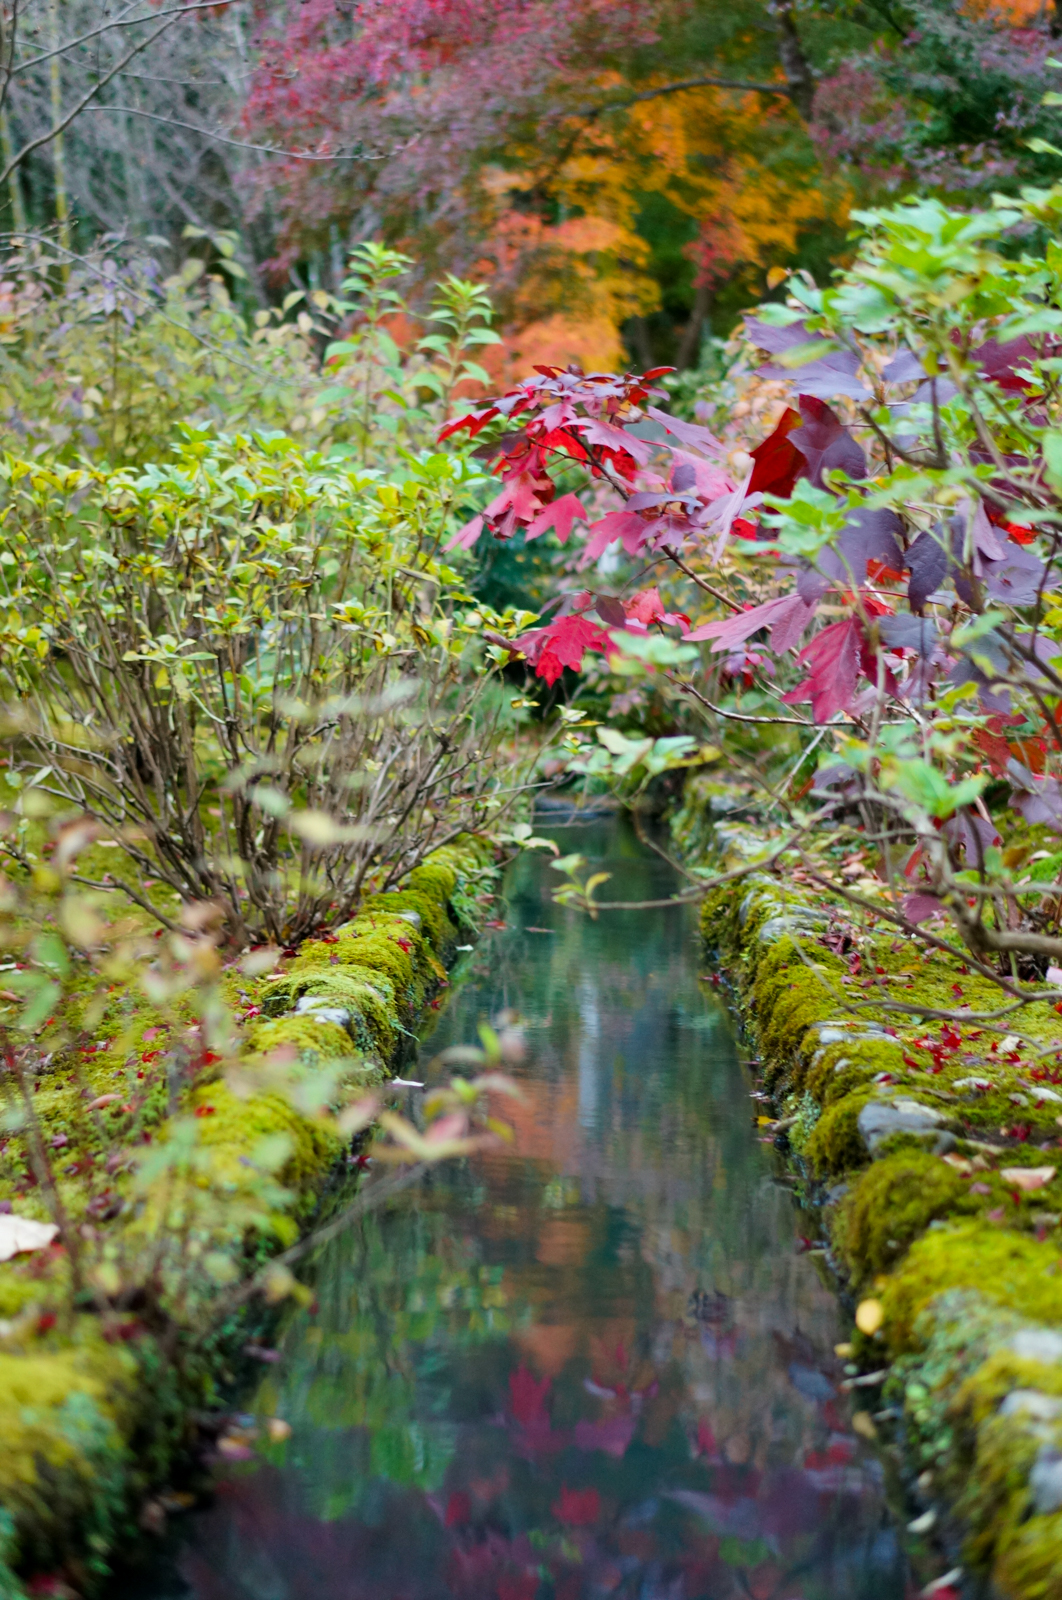 Kyoto, momiji kyoto, voyage kyoto, séjour kyoto, kyoto automne, kyoto fall, kyoto autumn, kyoto érables, tenryu temple, tenryu-ji, tenryuji